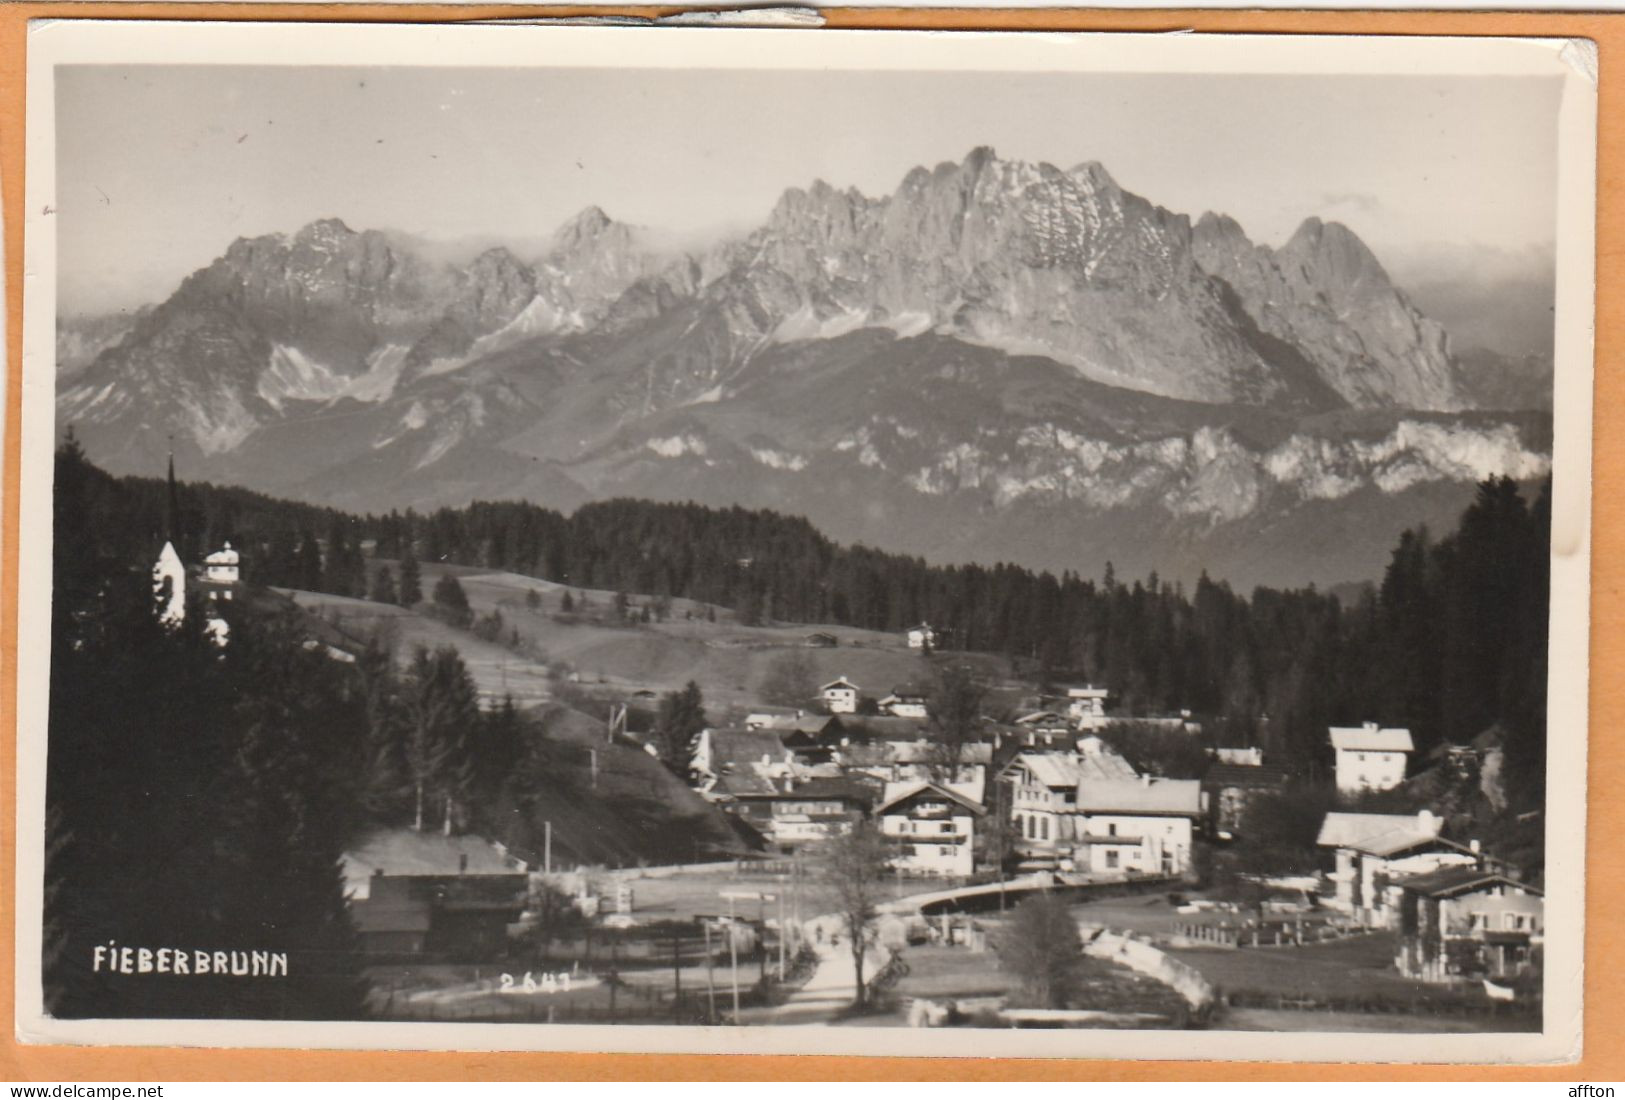 Fieberbrunn Austria Old Postcard - Fieberbrunn